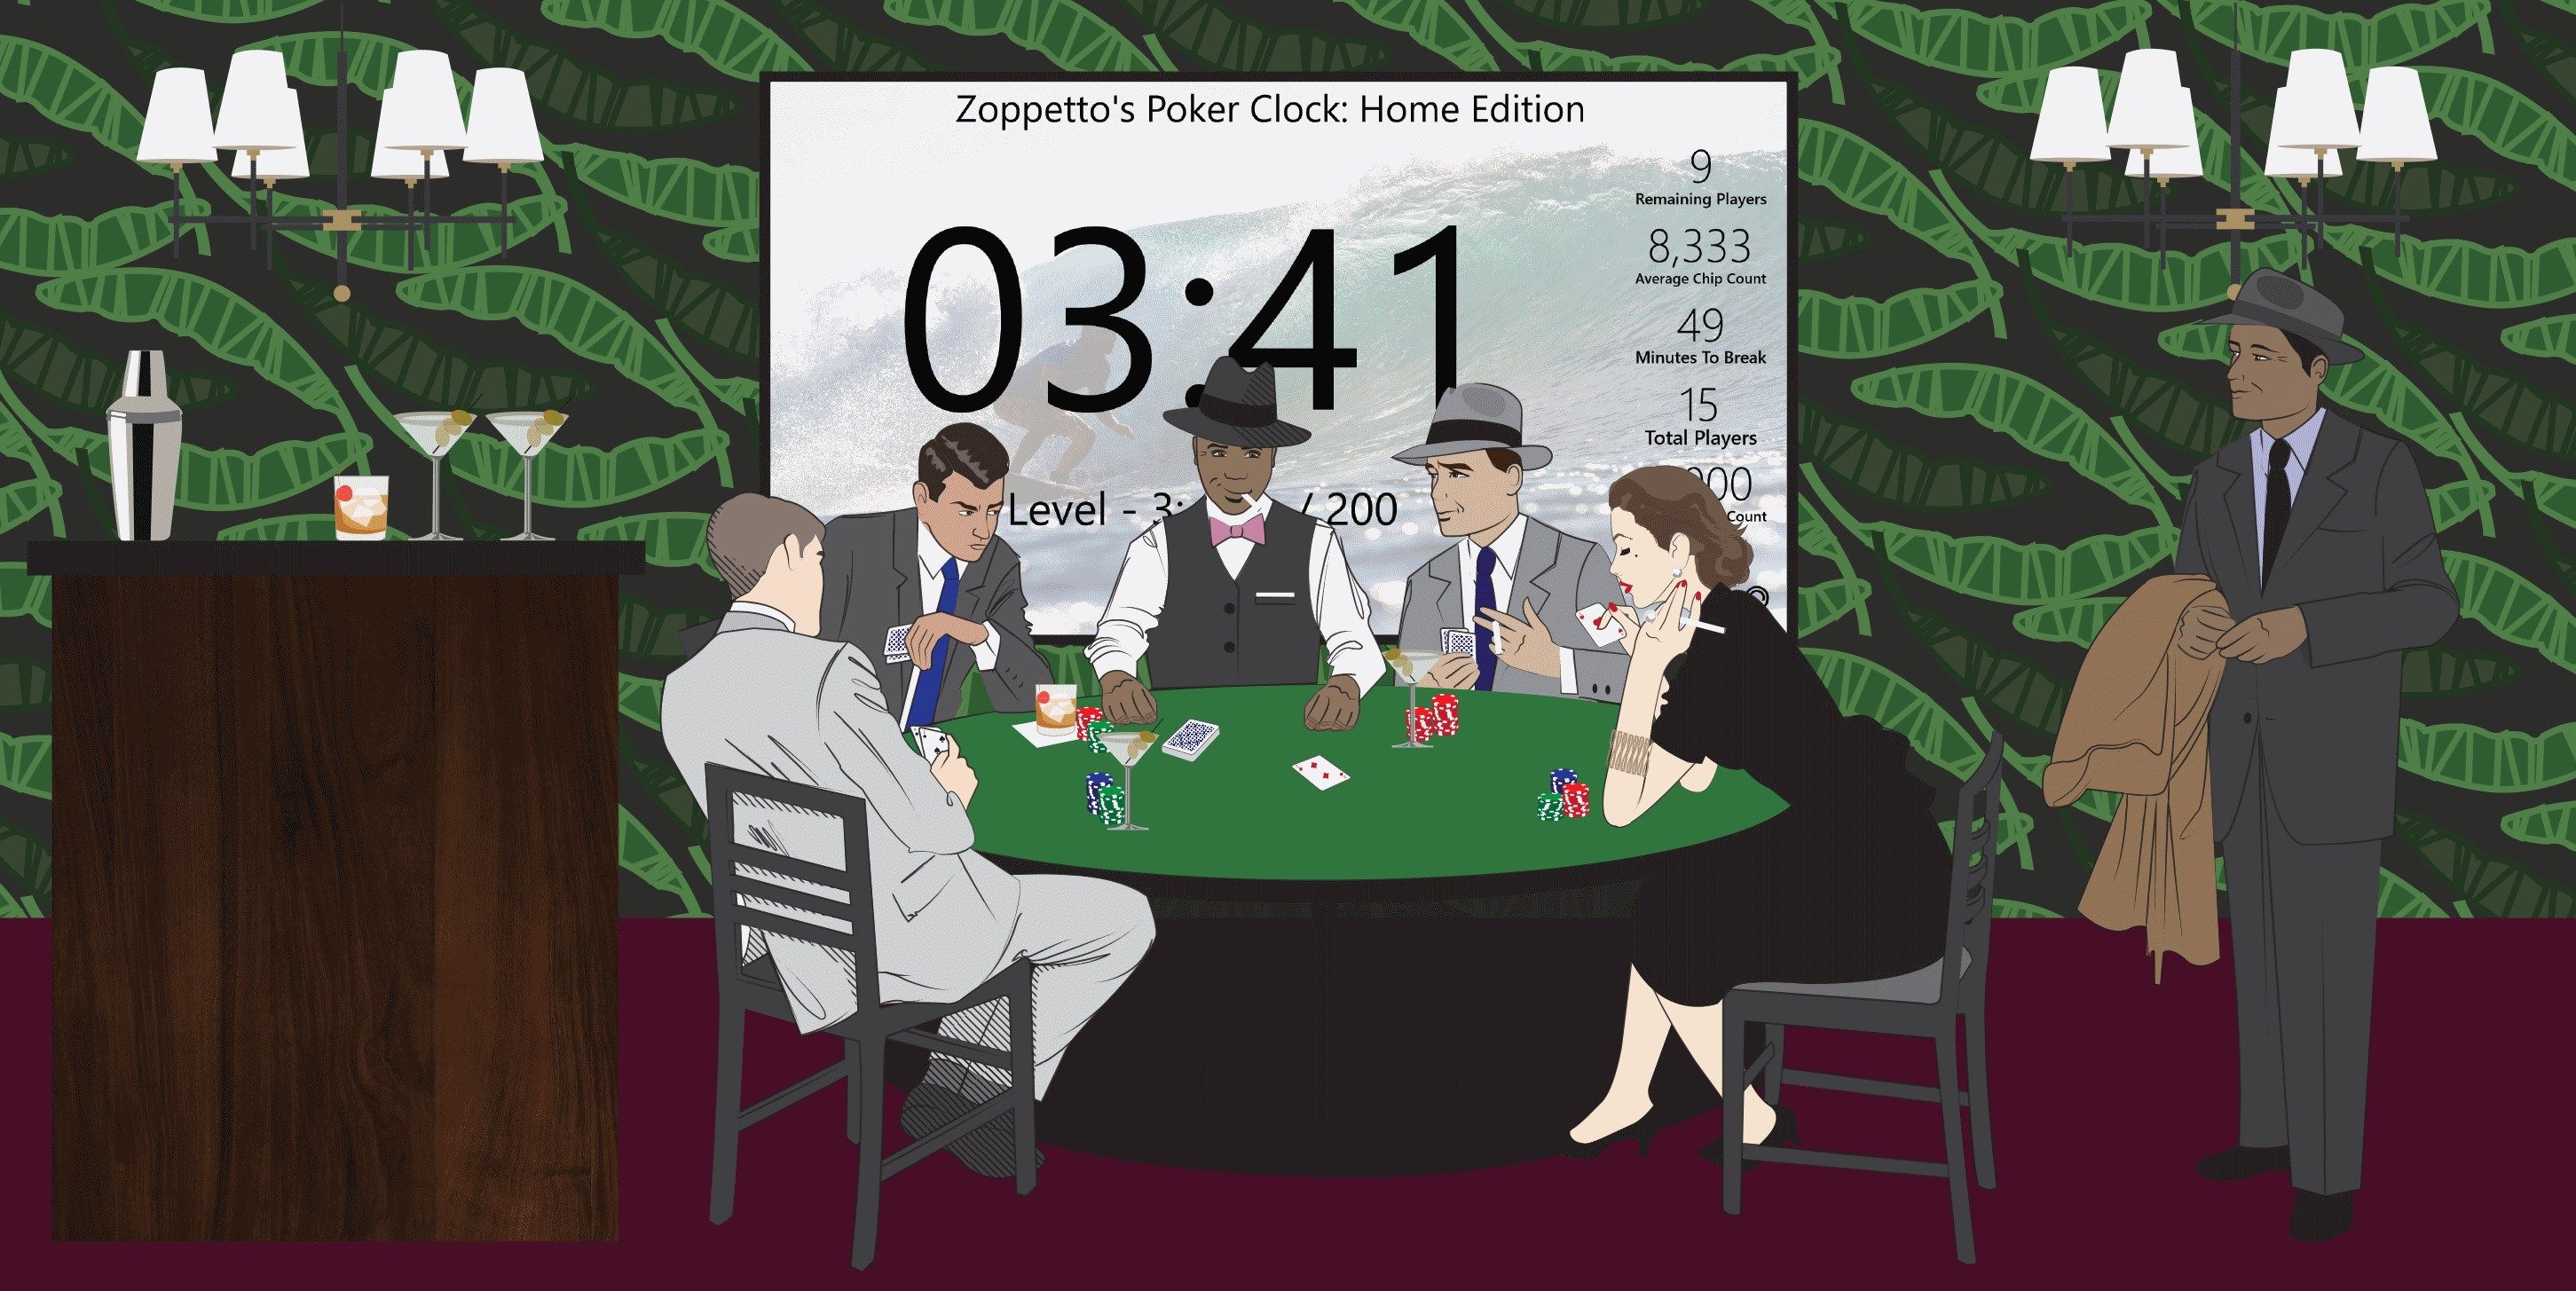 Zoppetto's Poker Clock